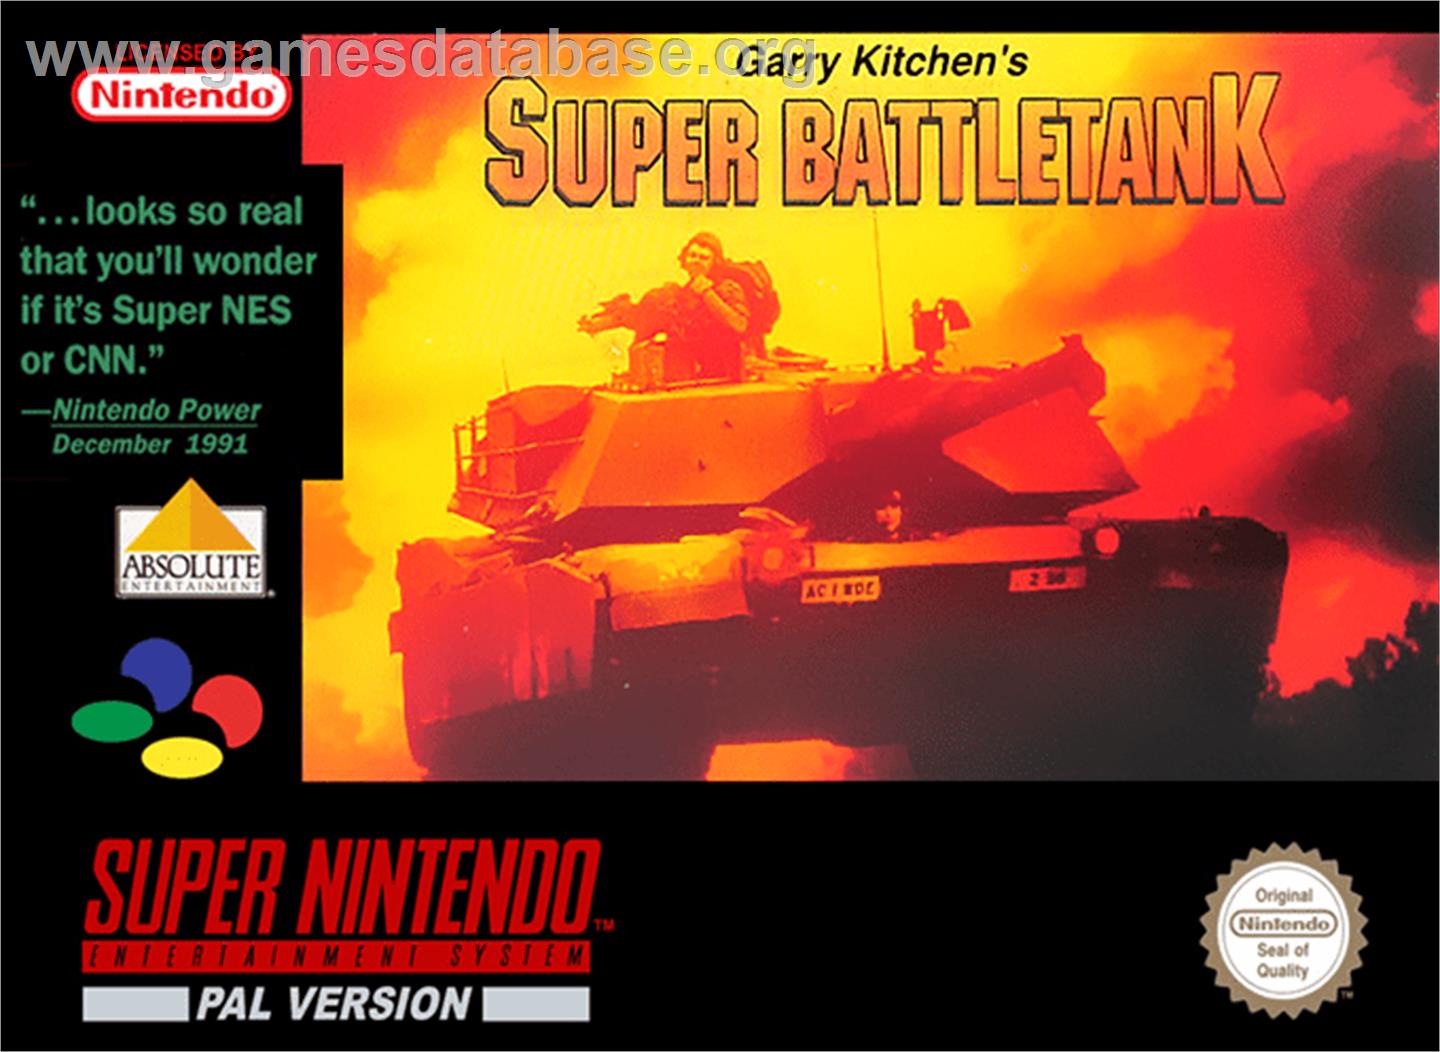 Garry Kitchen's Super Battletank: War in the Gulf - Nintendo SNES - Artwork - Box